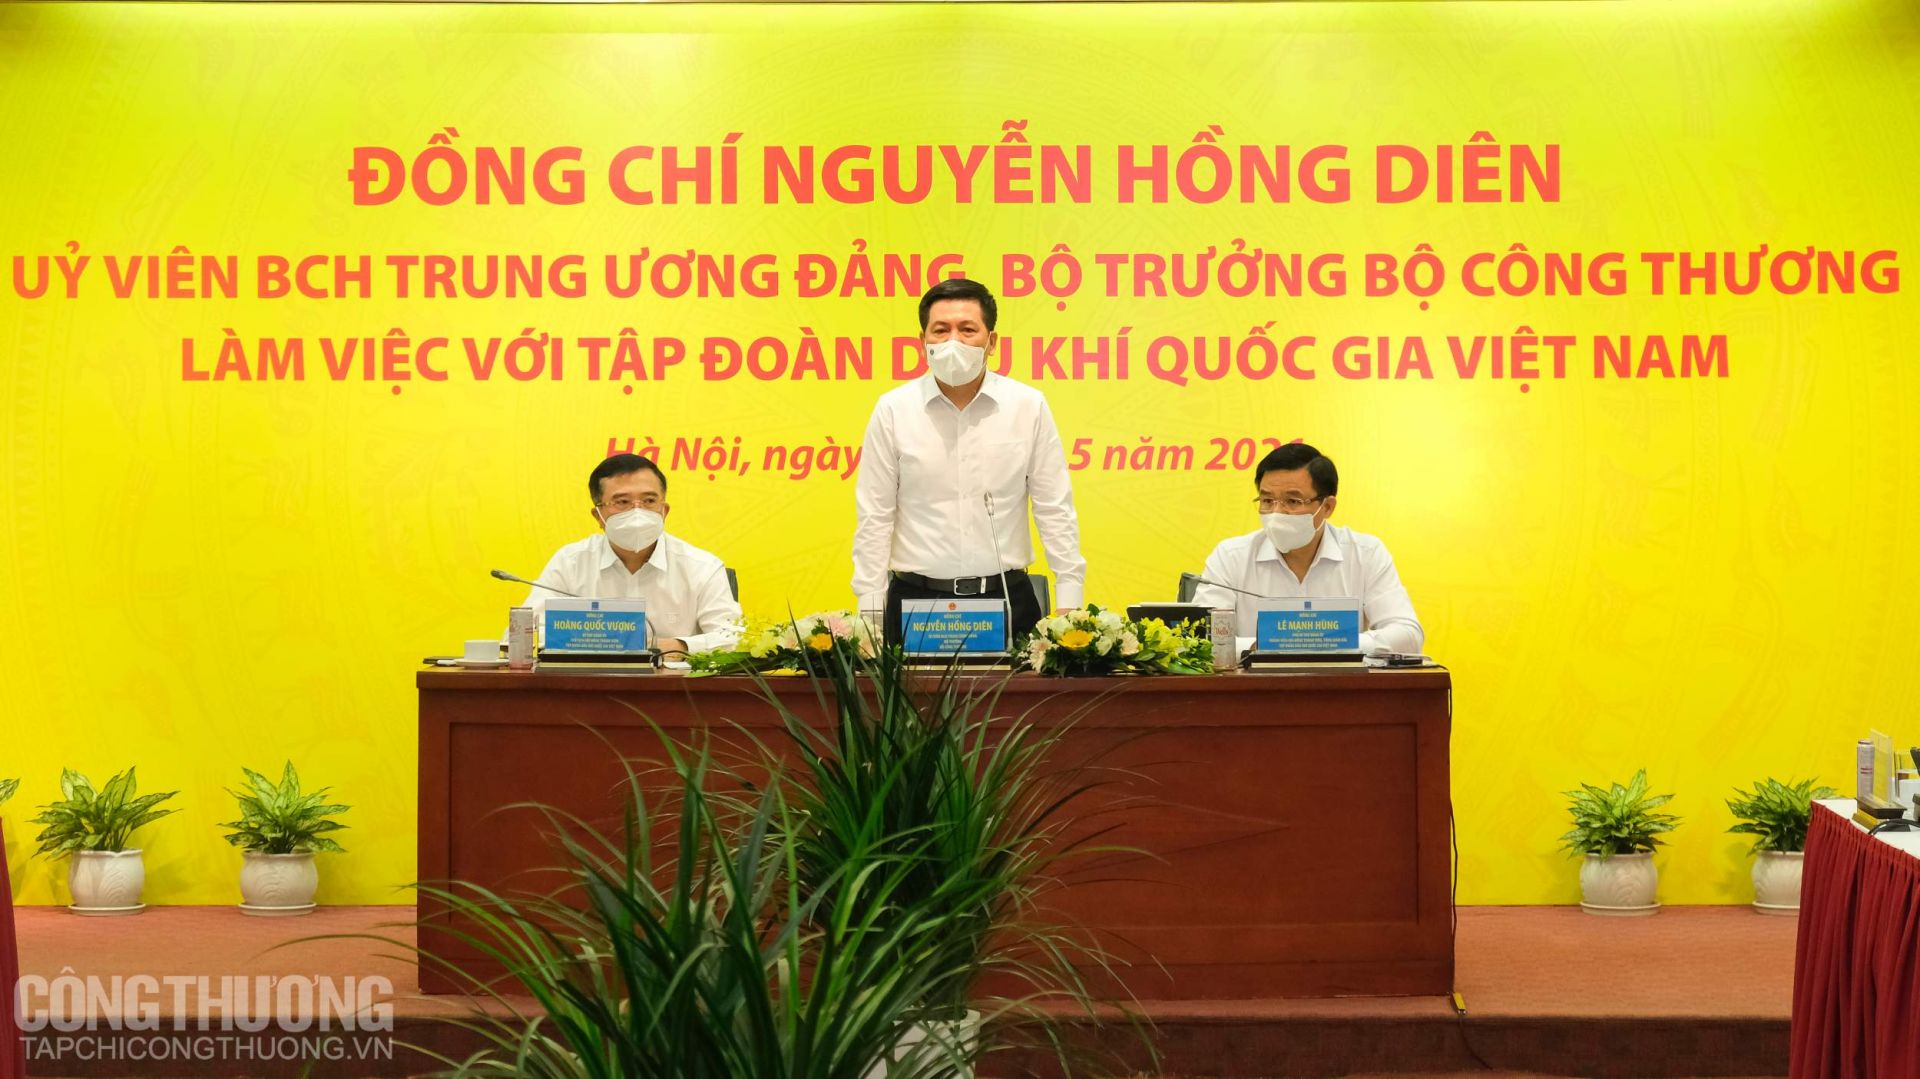 Bộ trưởng Bộ Công Thương Nguyễn Hồng Diên phát biểu tại buổi làm việc